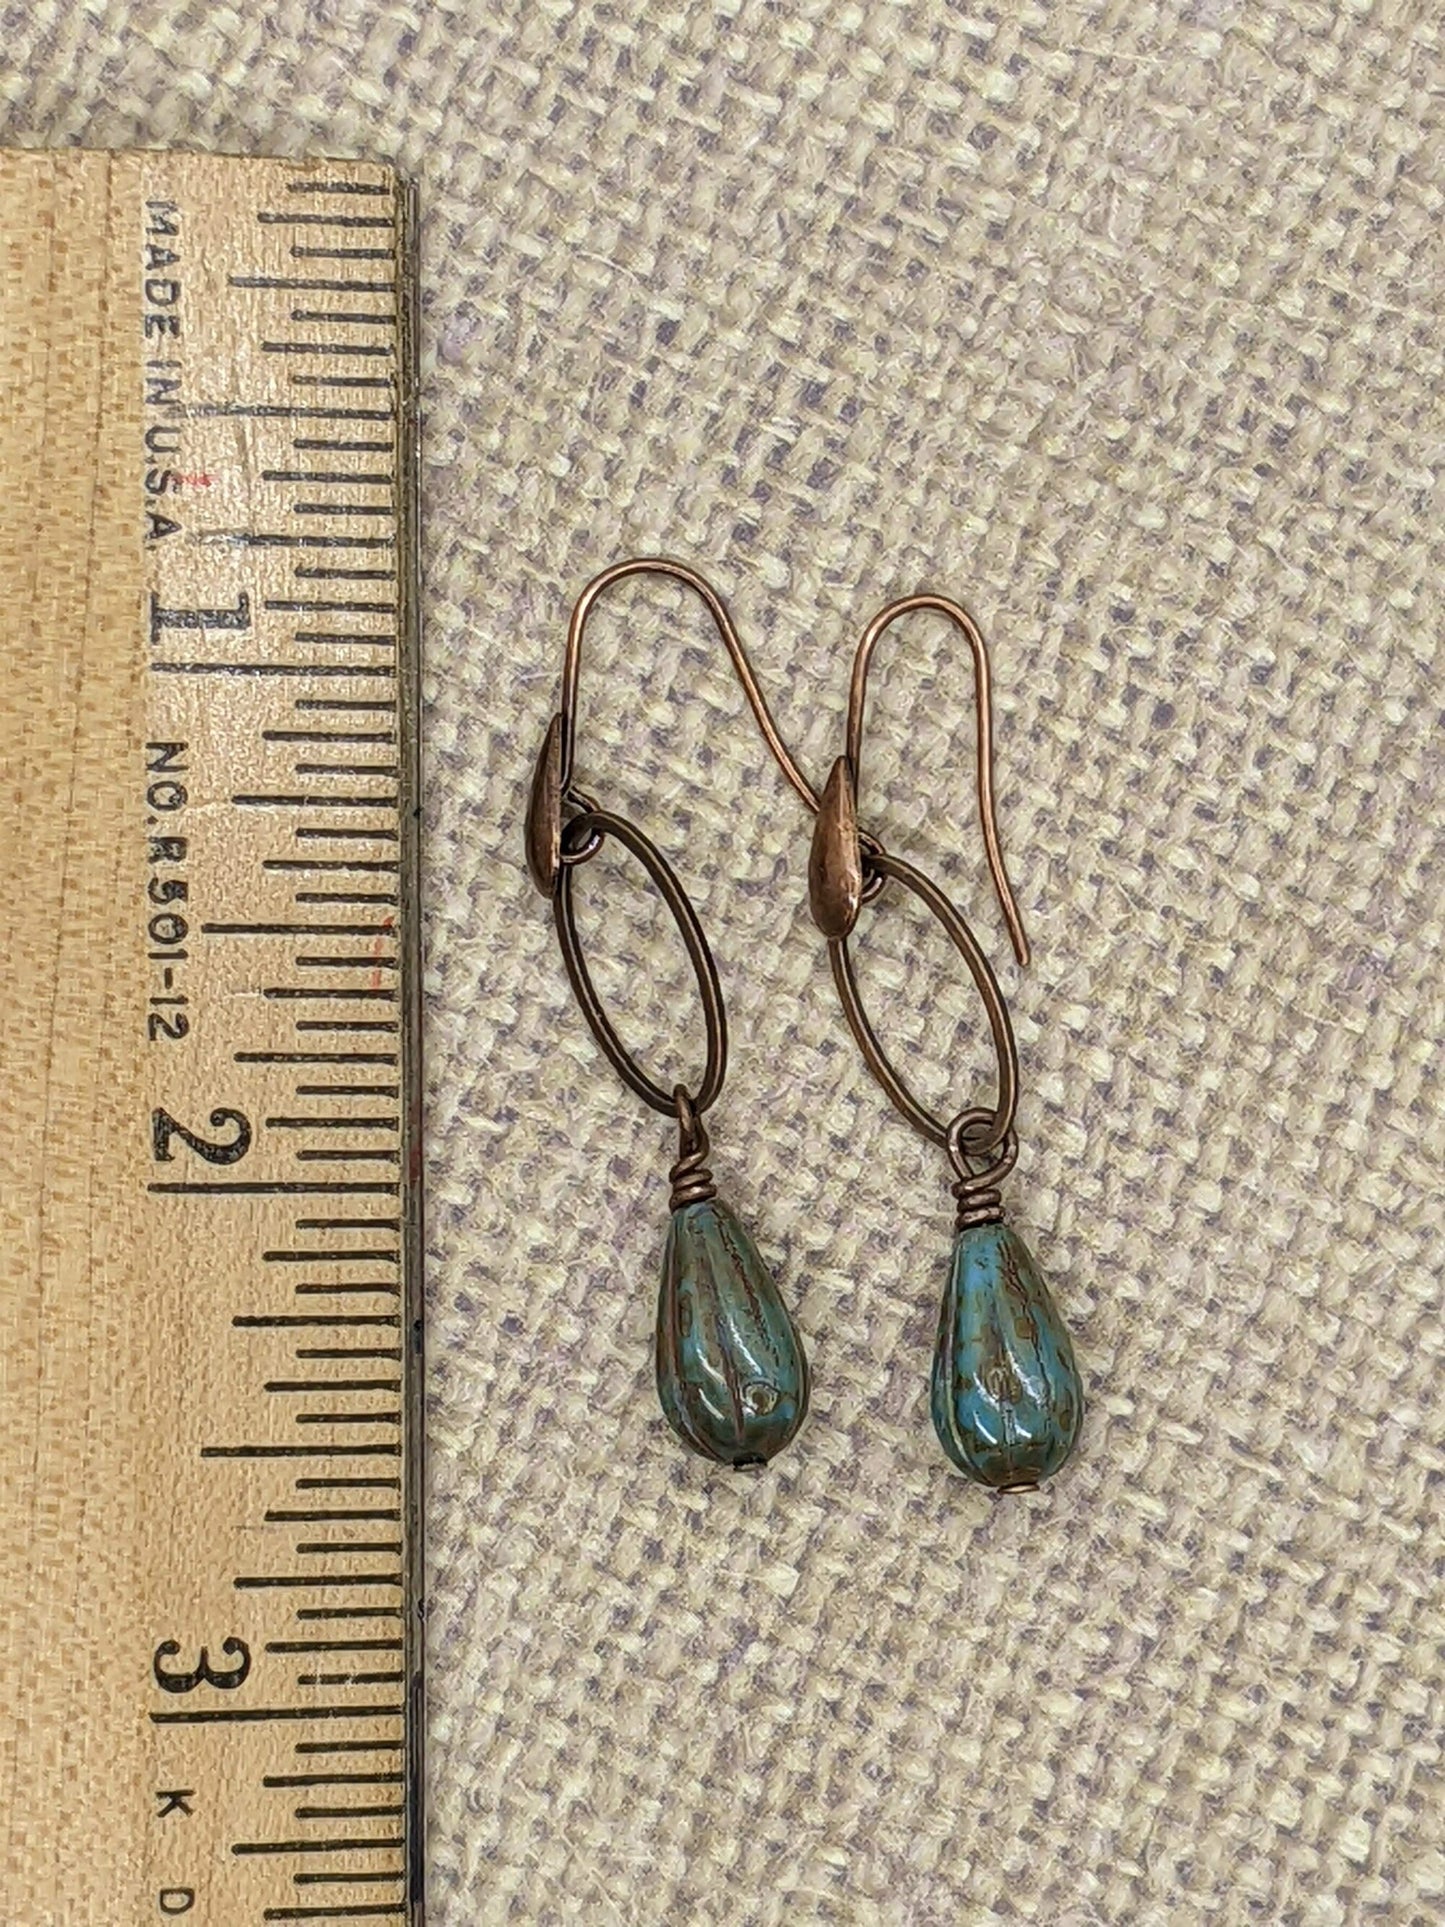 Earthy Blue and Copper Earrings